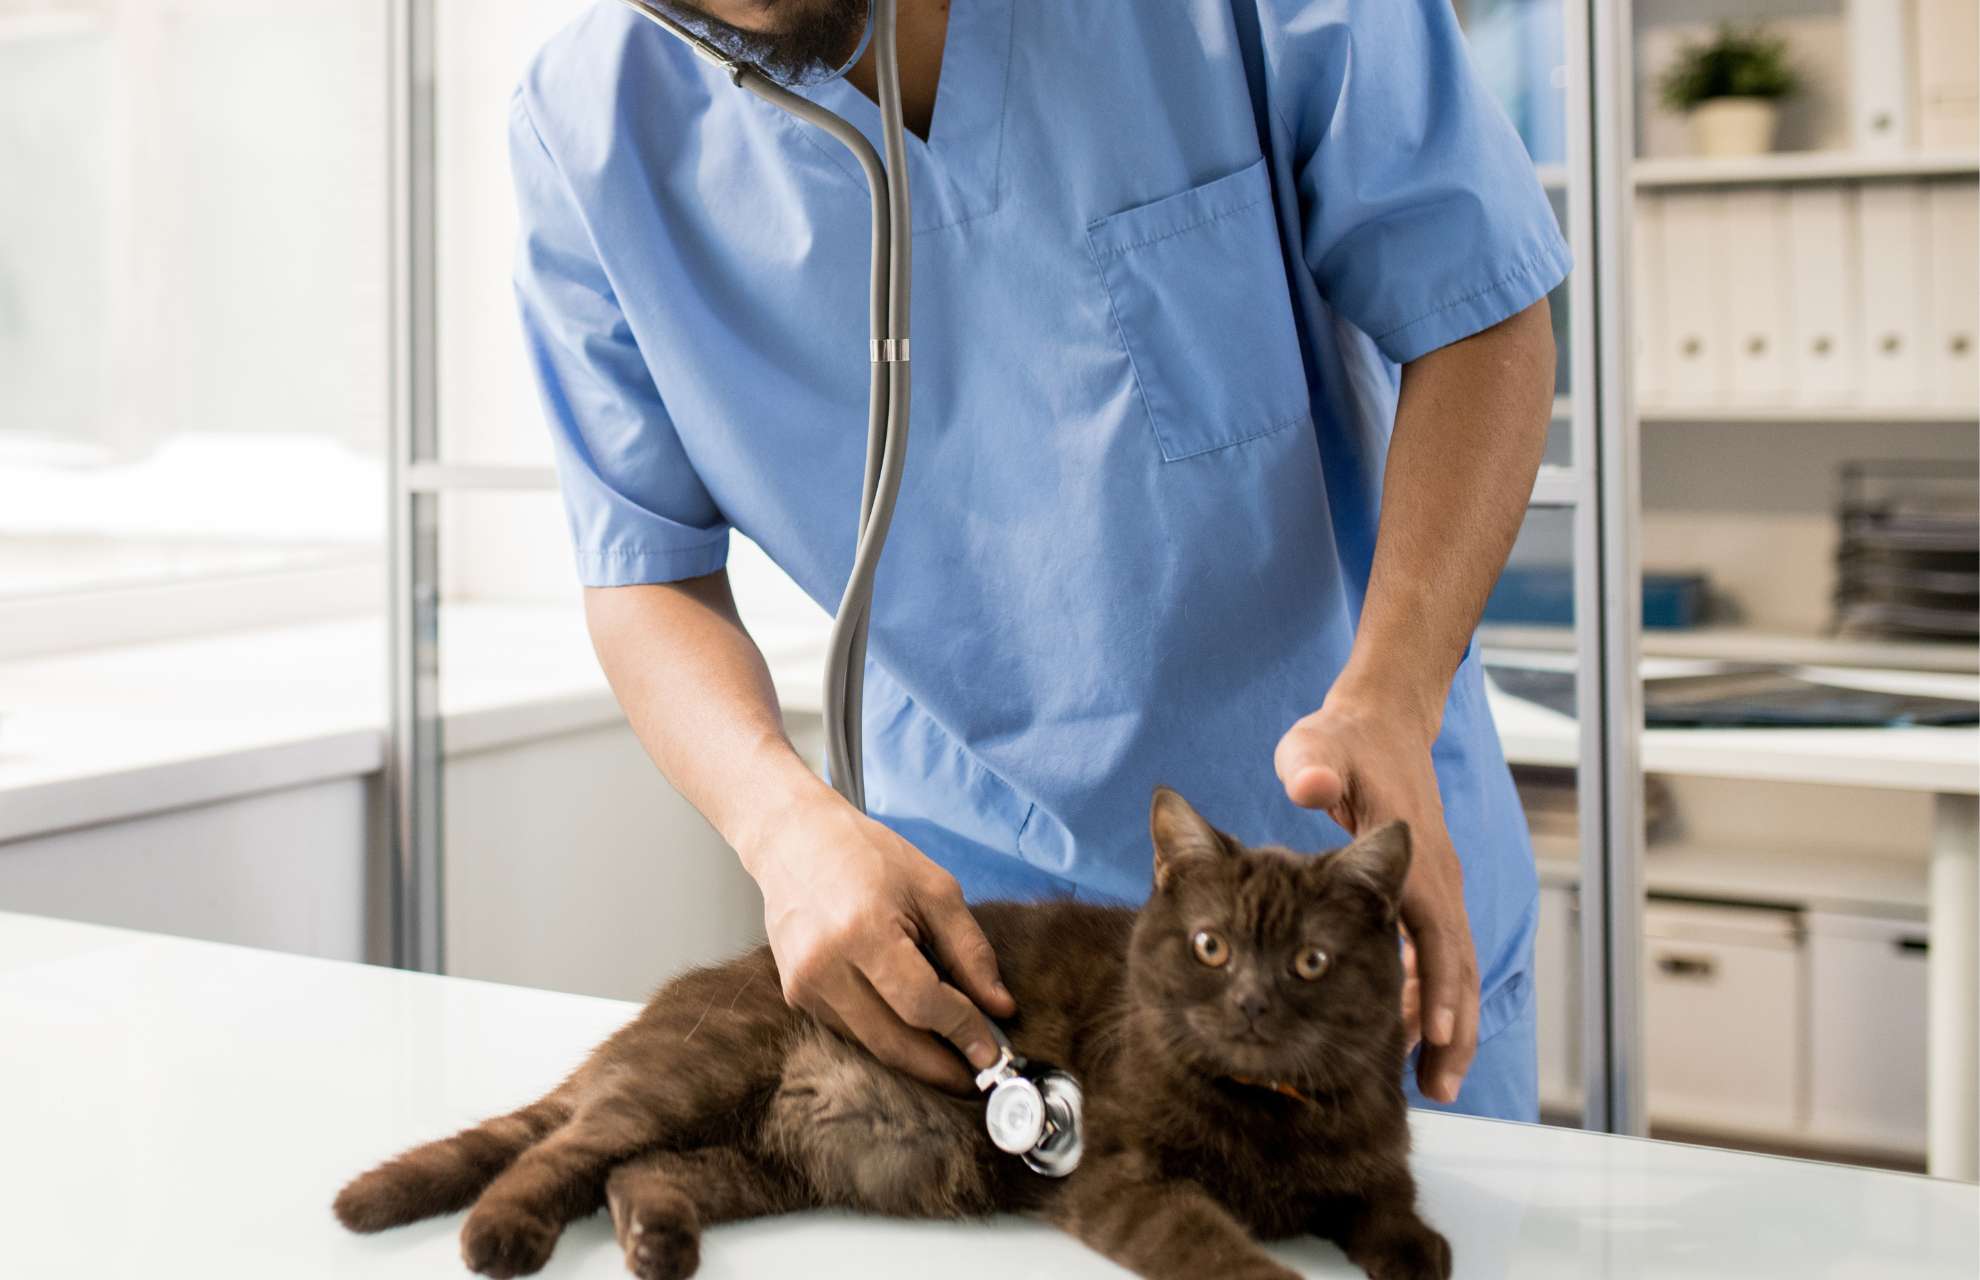 veterinarians examining cat